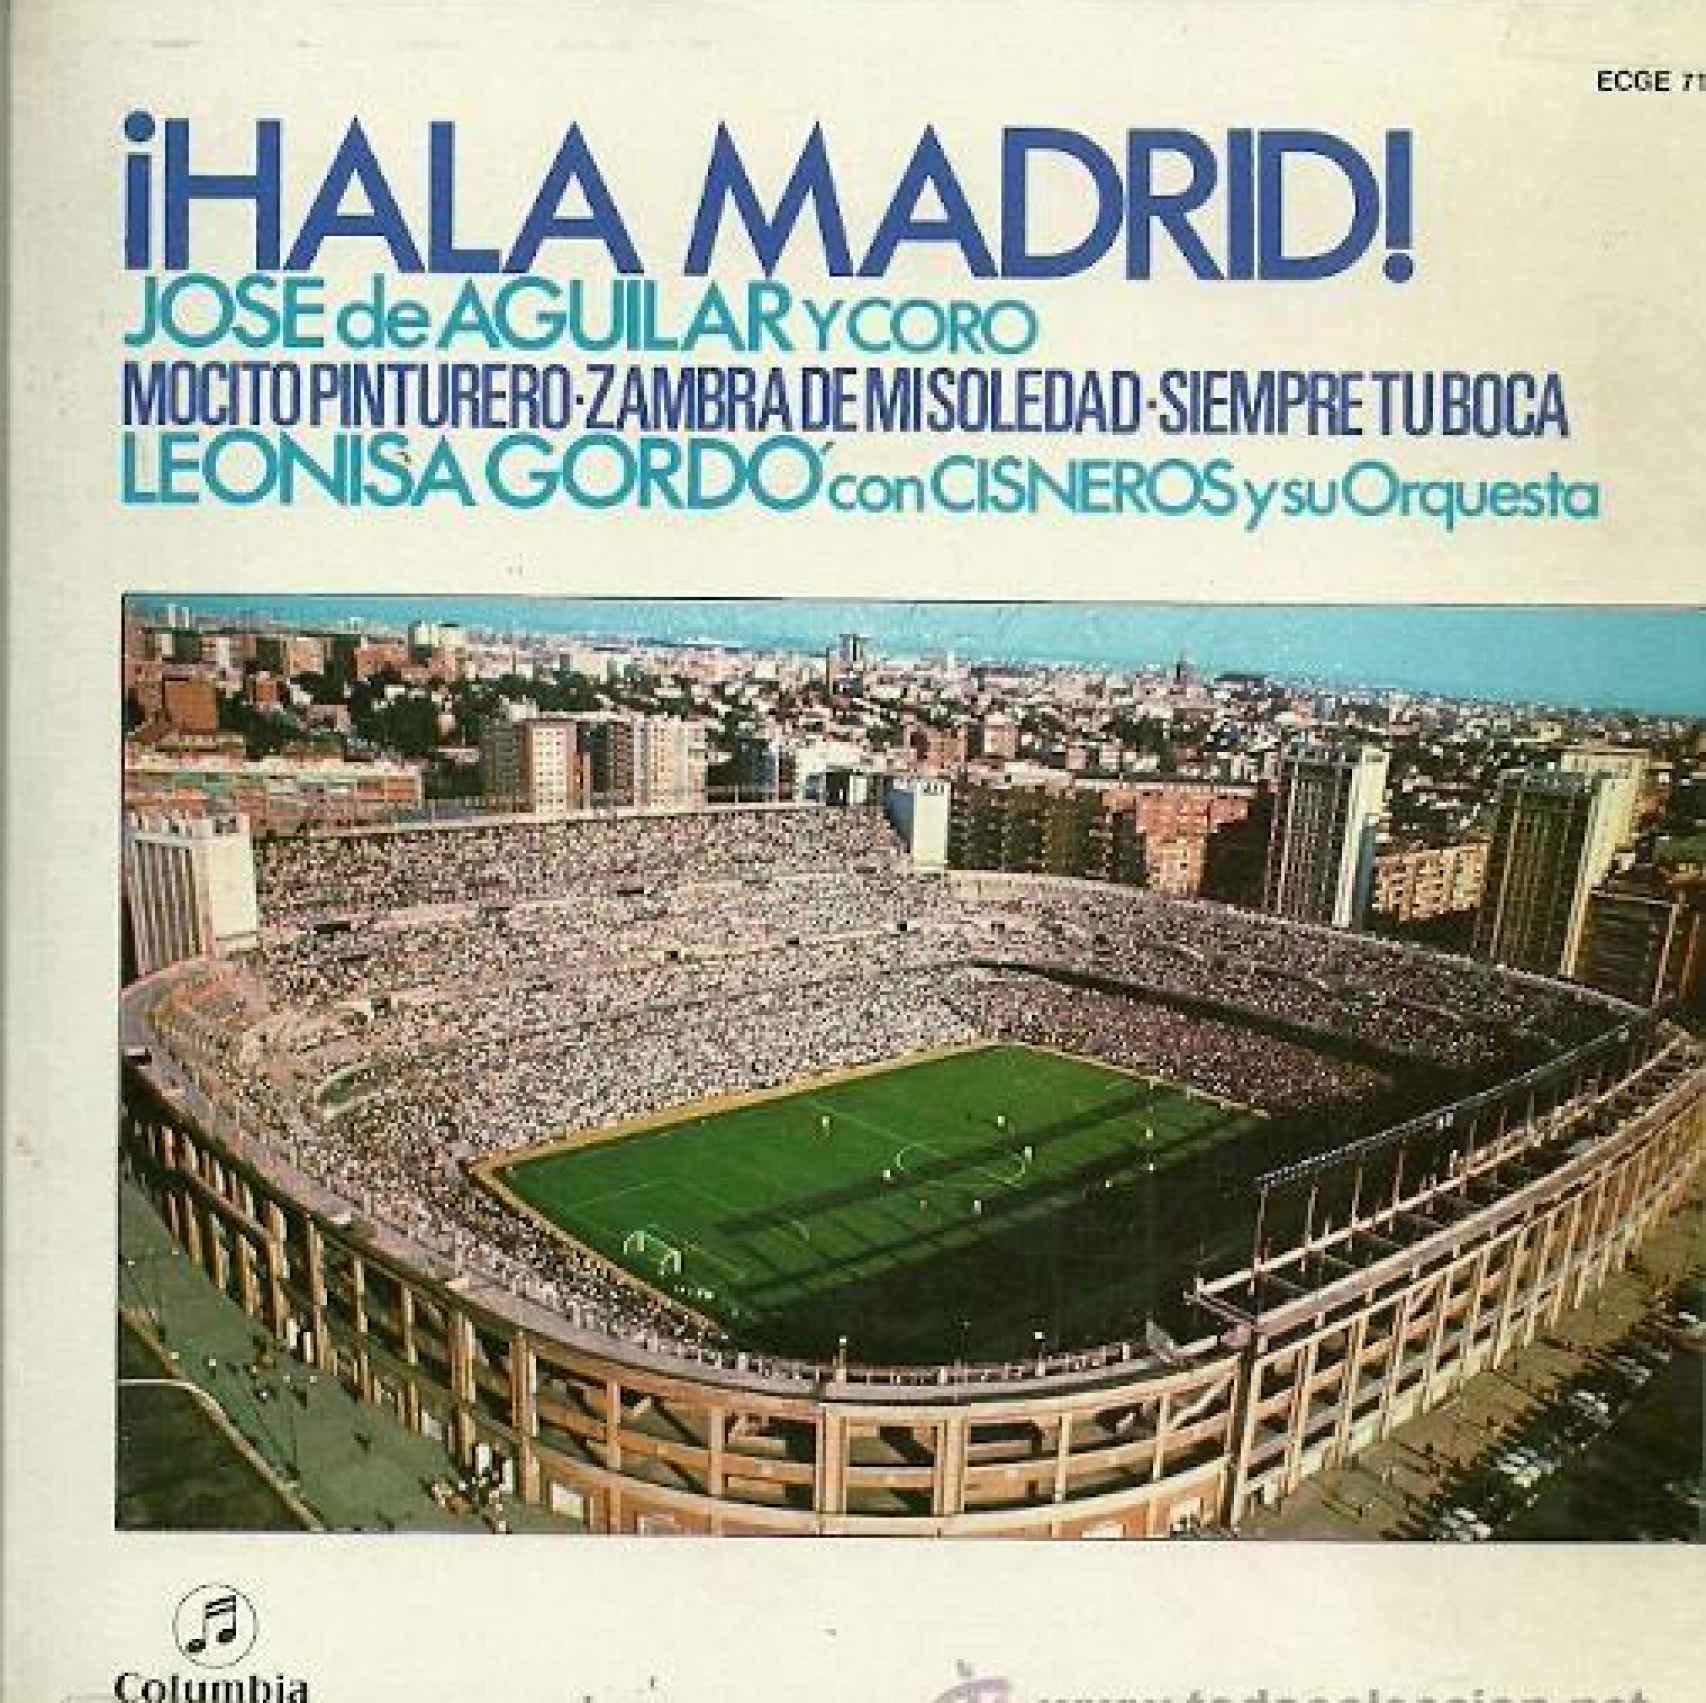 Portada del disco con una de las ediciones del himno del Real Madrid interpretado por José de Aguilar.